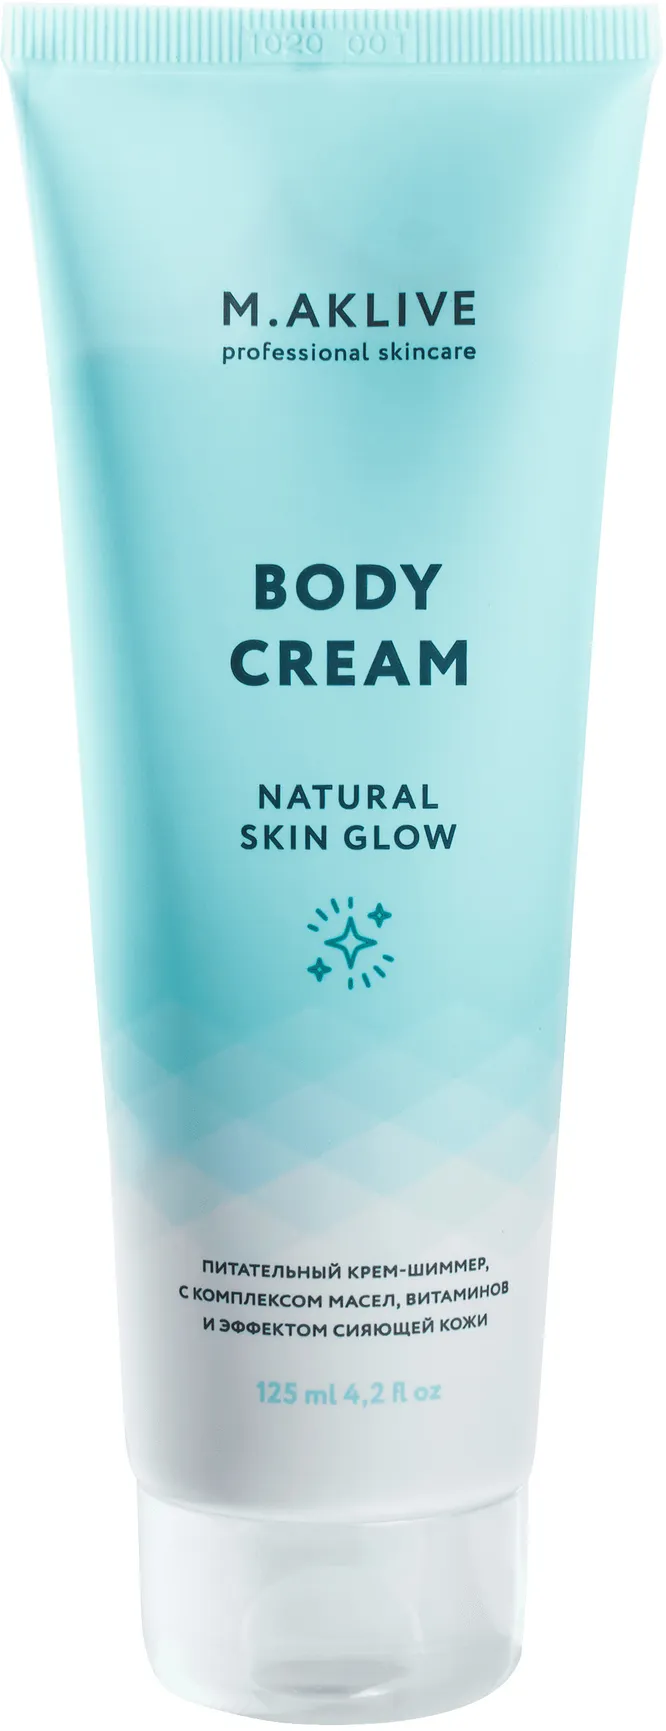 Крем-шиммер для тела Body Cream Natural Skin Glow, M.Aklive, 950 руб.